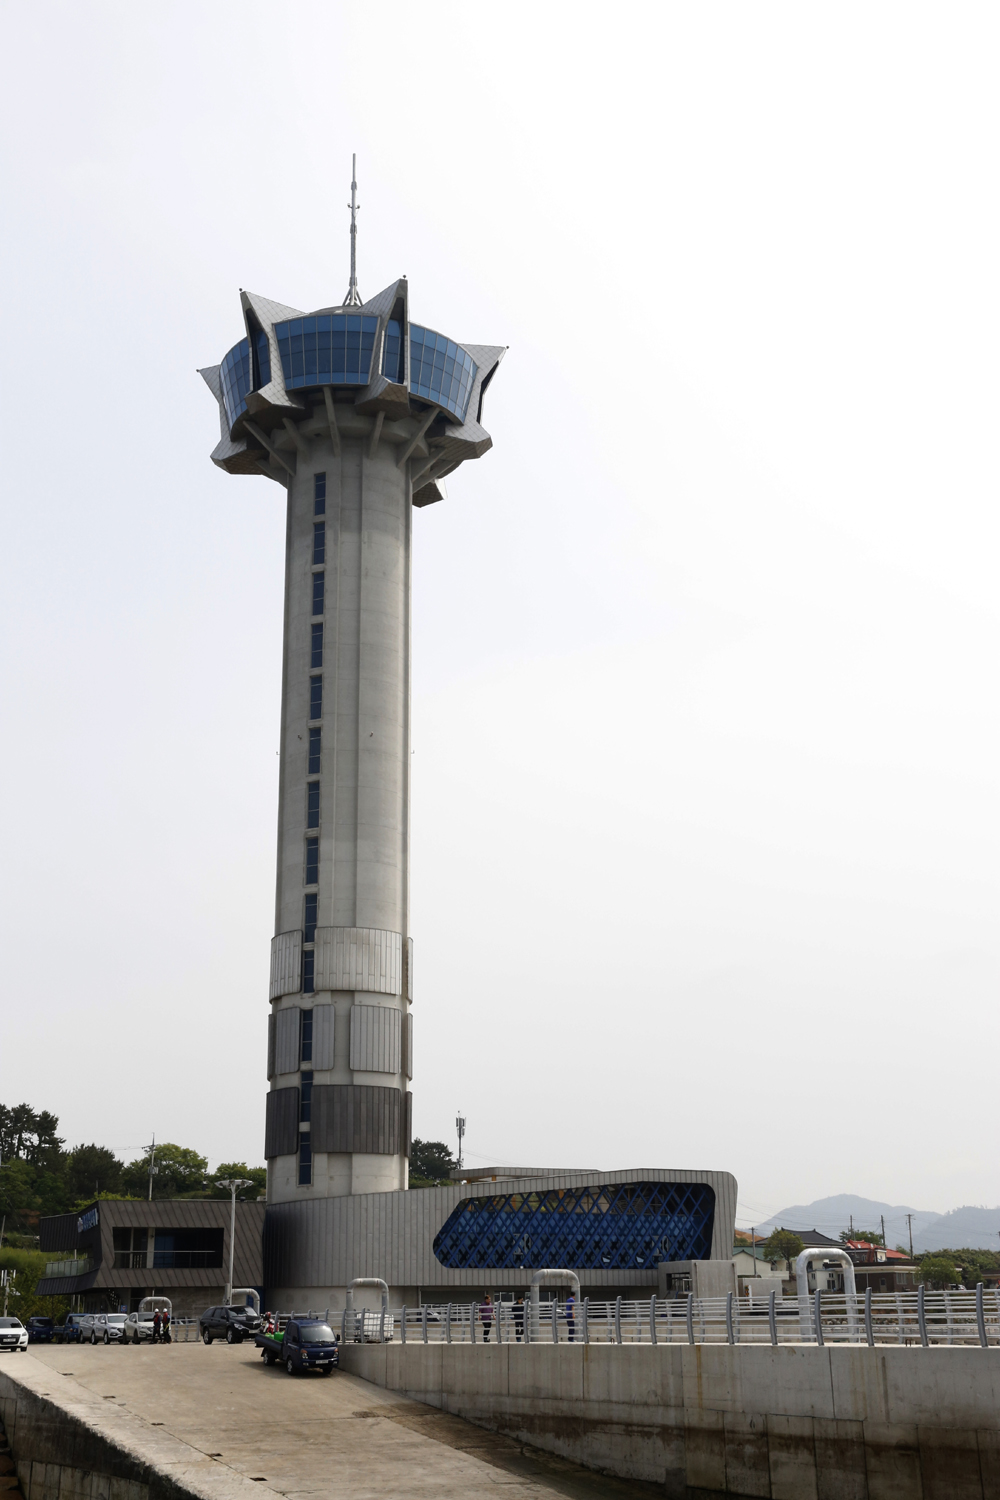 낙월도행 배를 타는 향화도항에 세워진 칠산타워. 높이 111미터의 전망 타워다. 